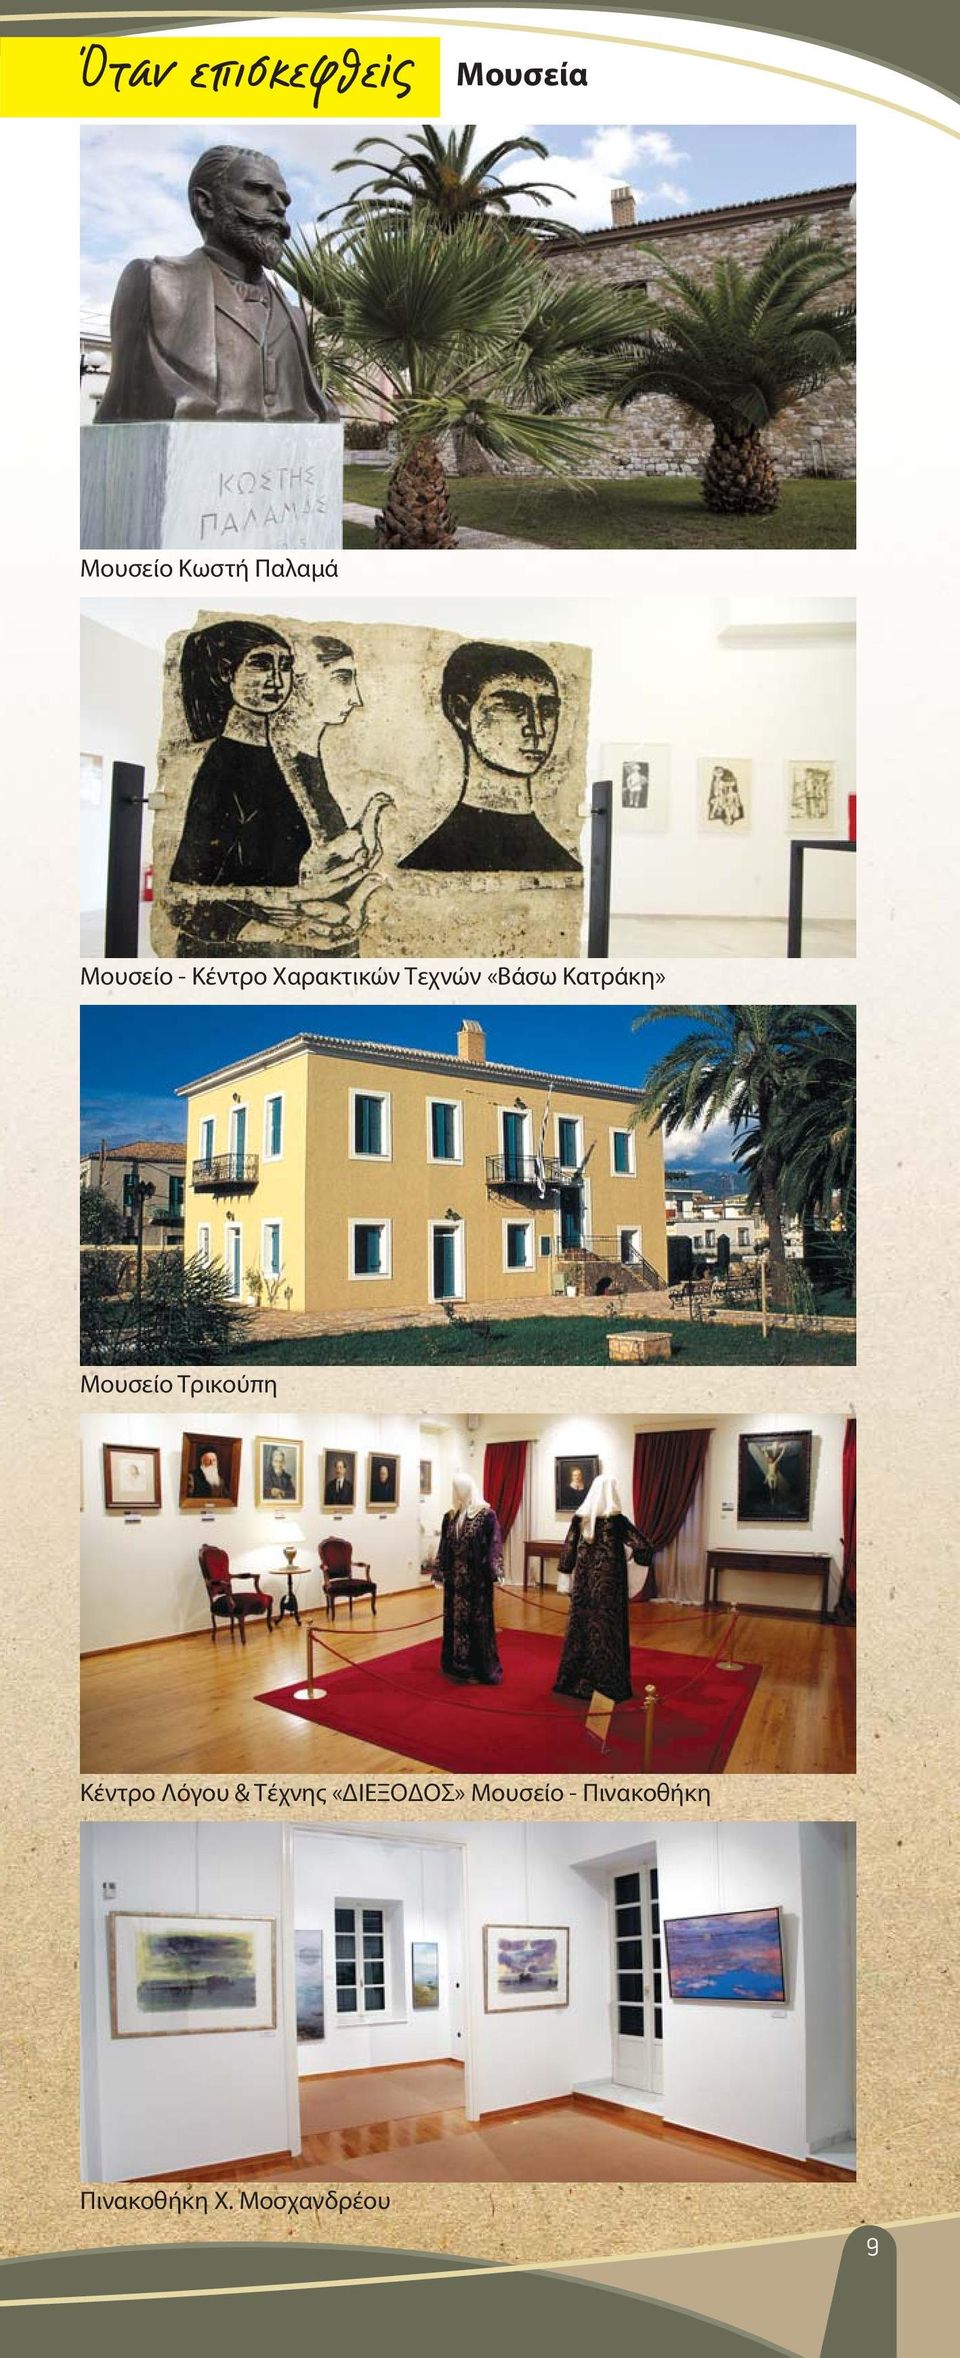 Κατράκη» Mουσείο Τρικούπη Κέντρο Λόγου & Τέχνης